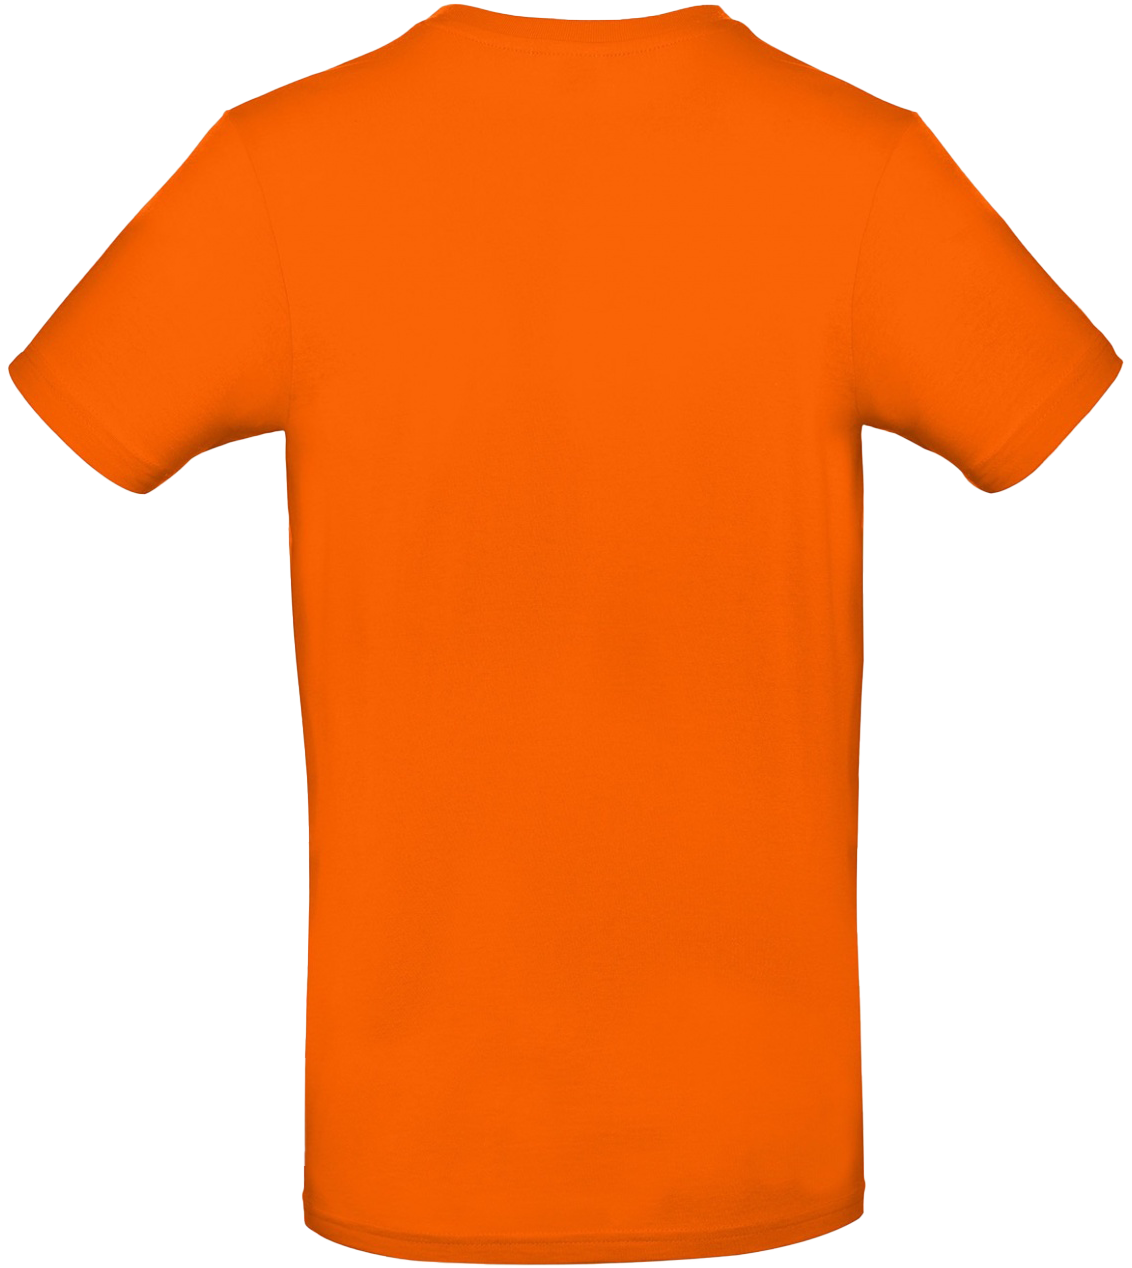 T-shirt E#190 Orange 58